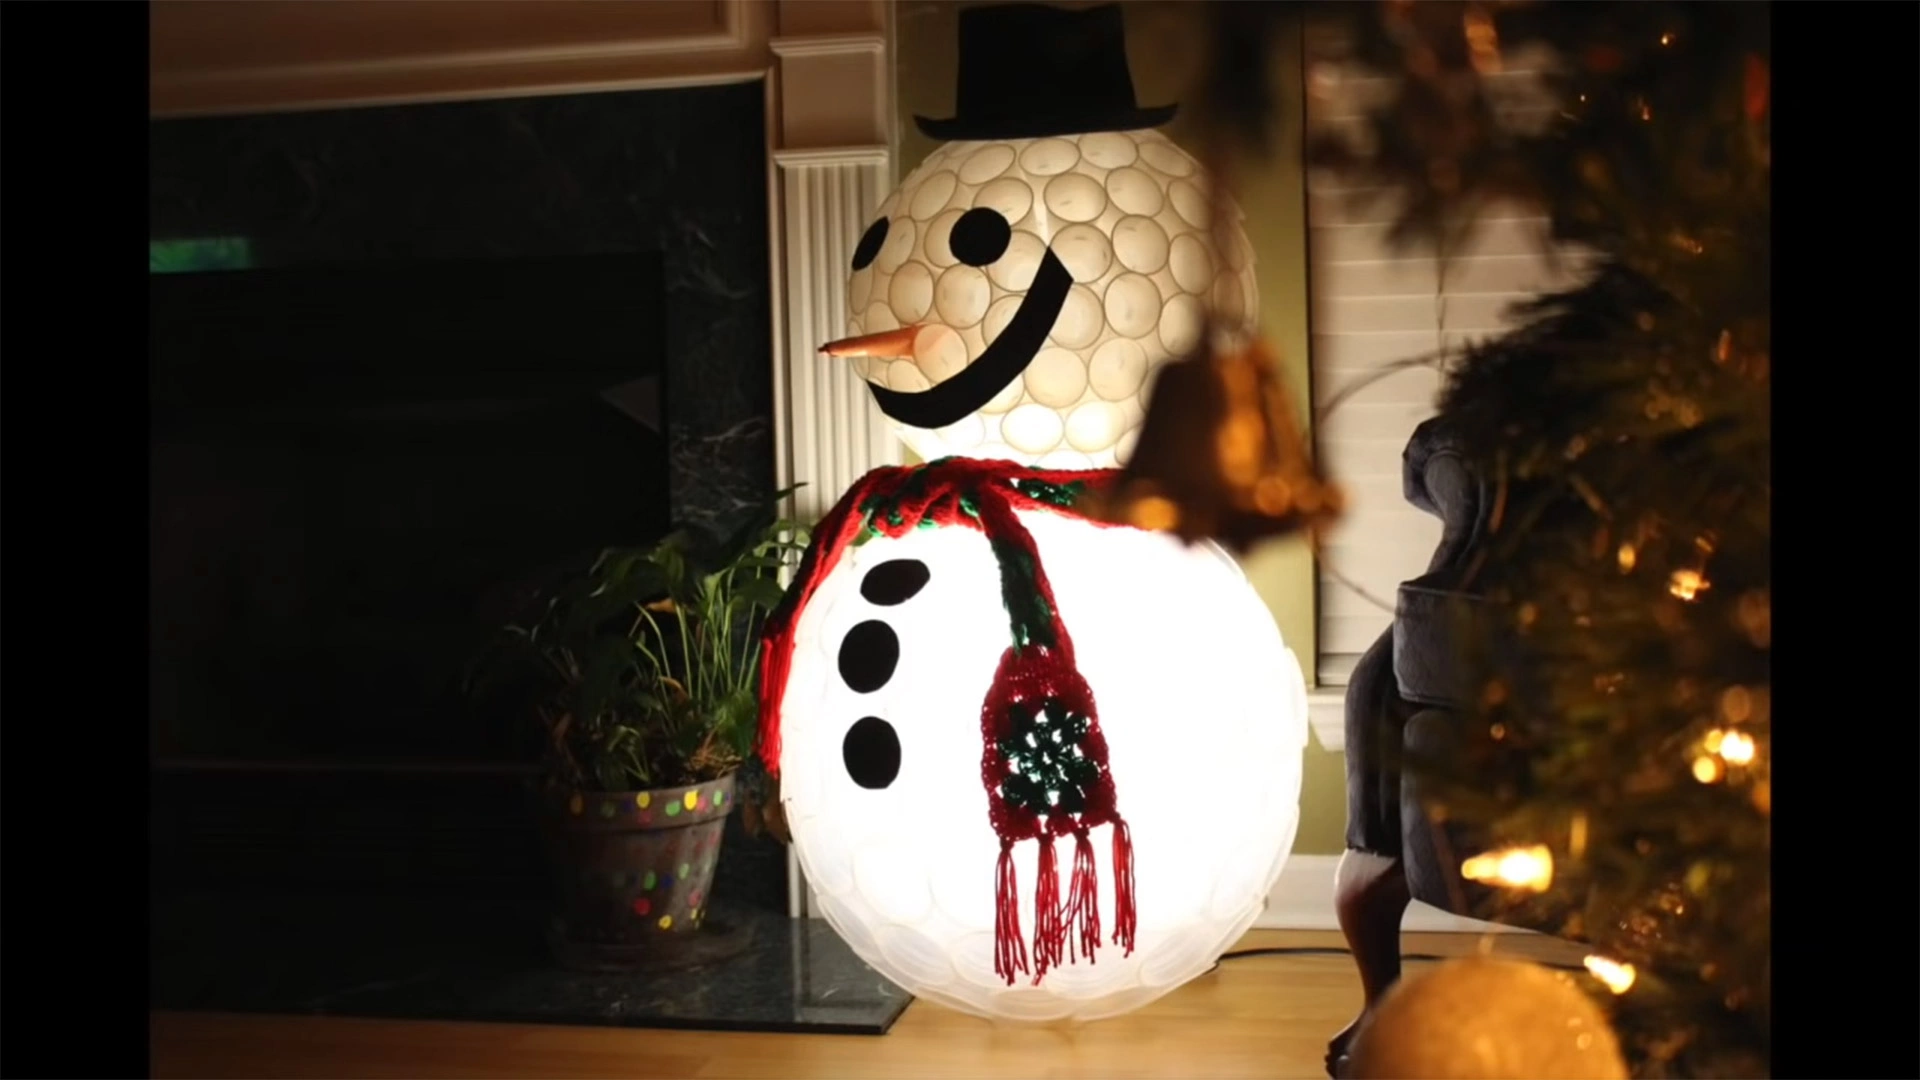 Как сделать снеговика своими руками — 2 ответов | форум Babyblog